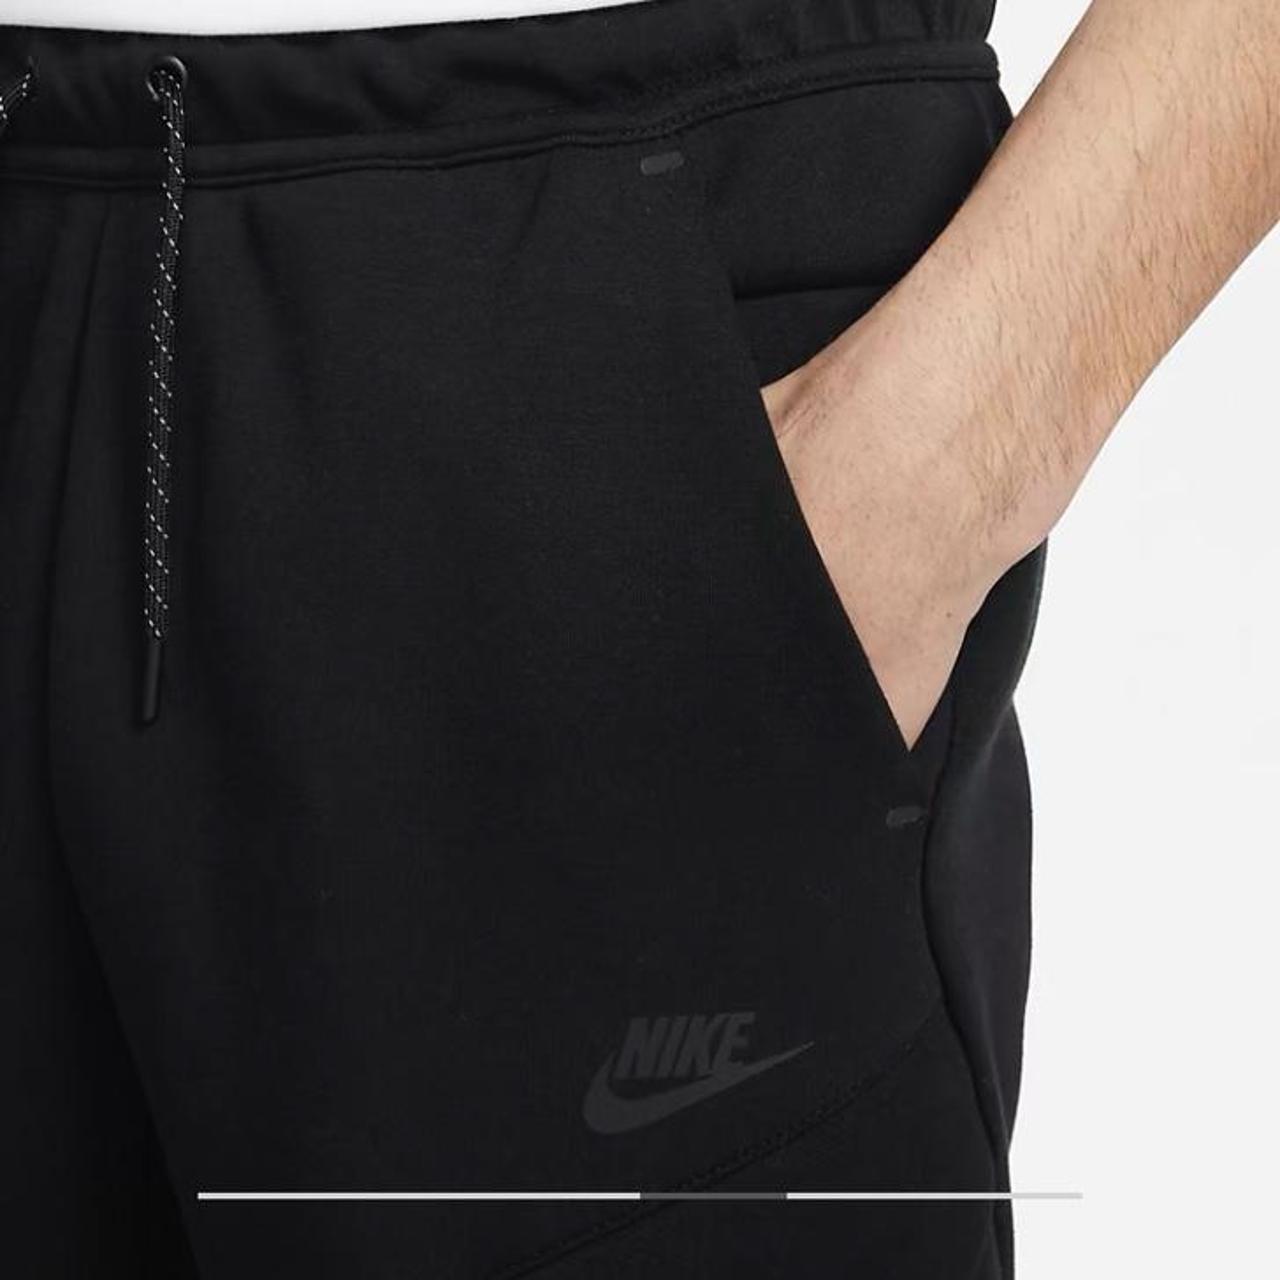 Nike Sportswear Tech Fleece Men's Utility... - Depop